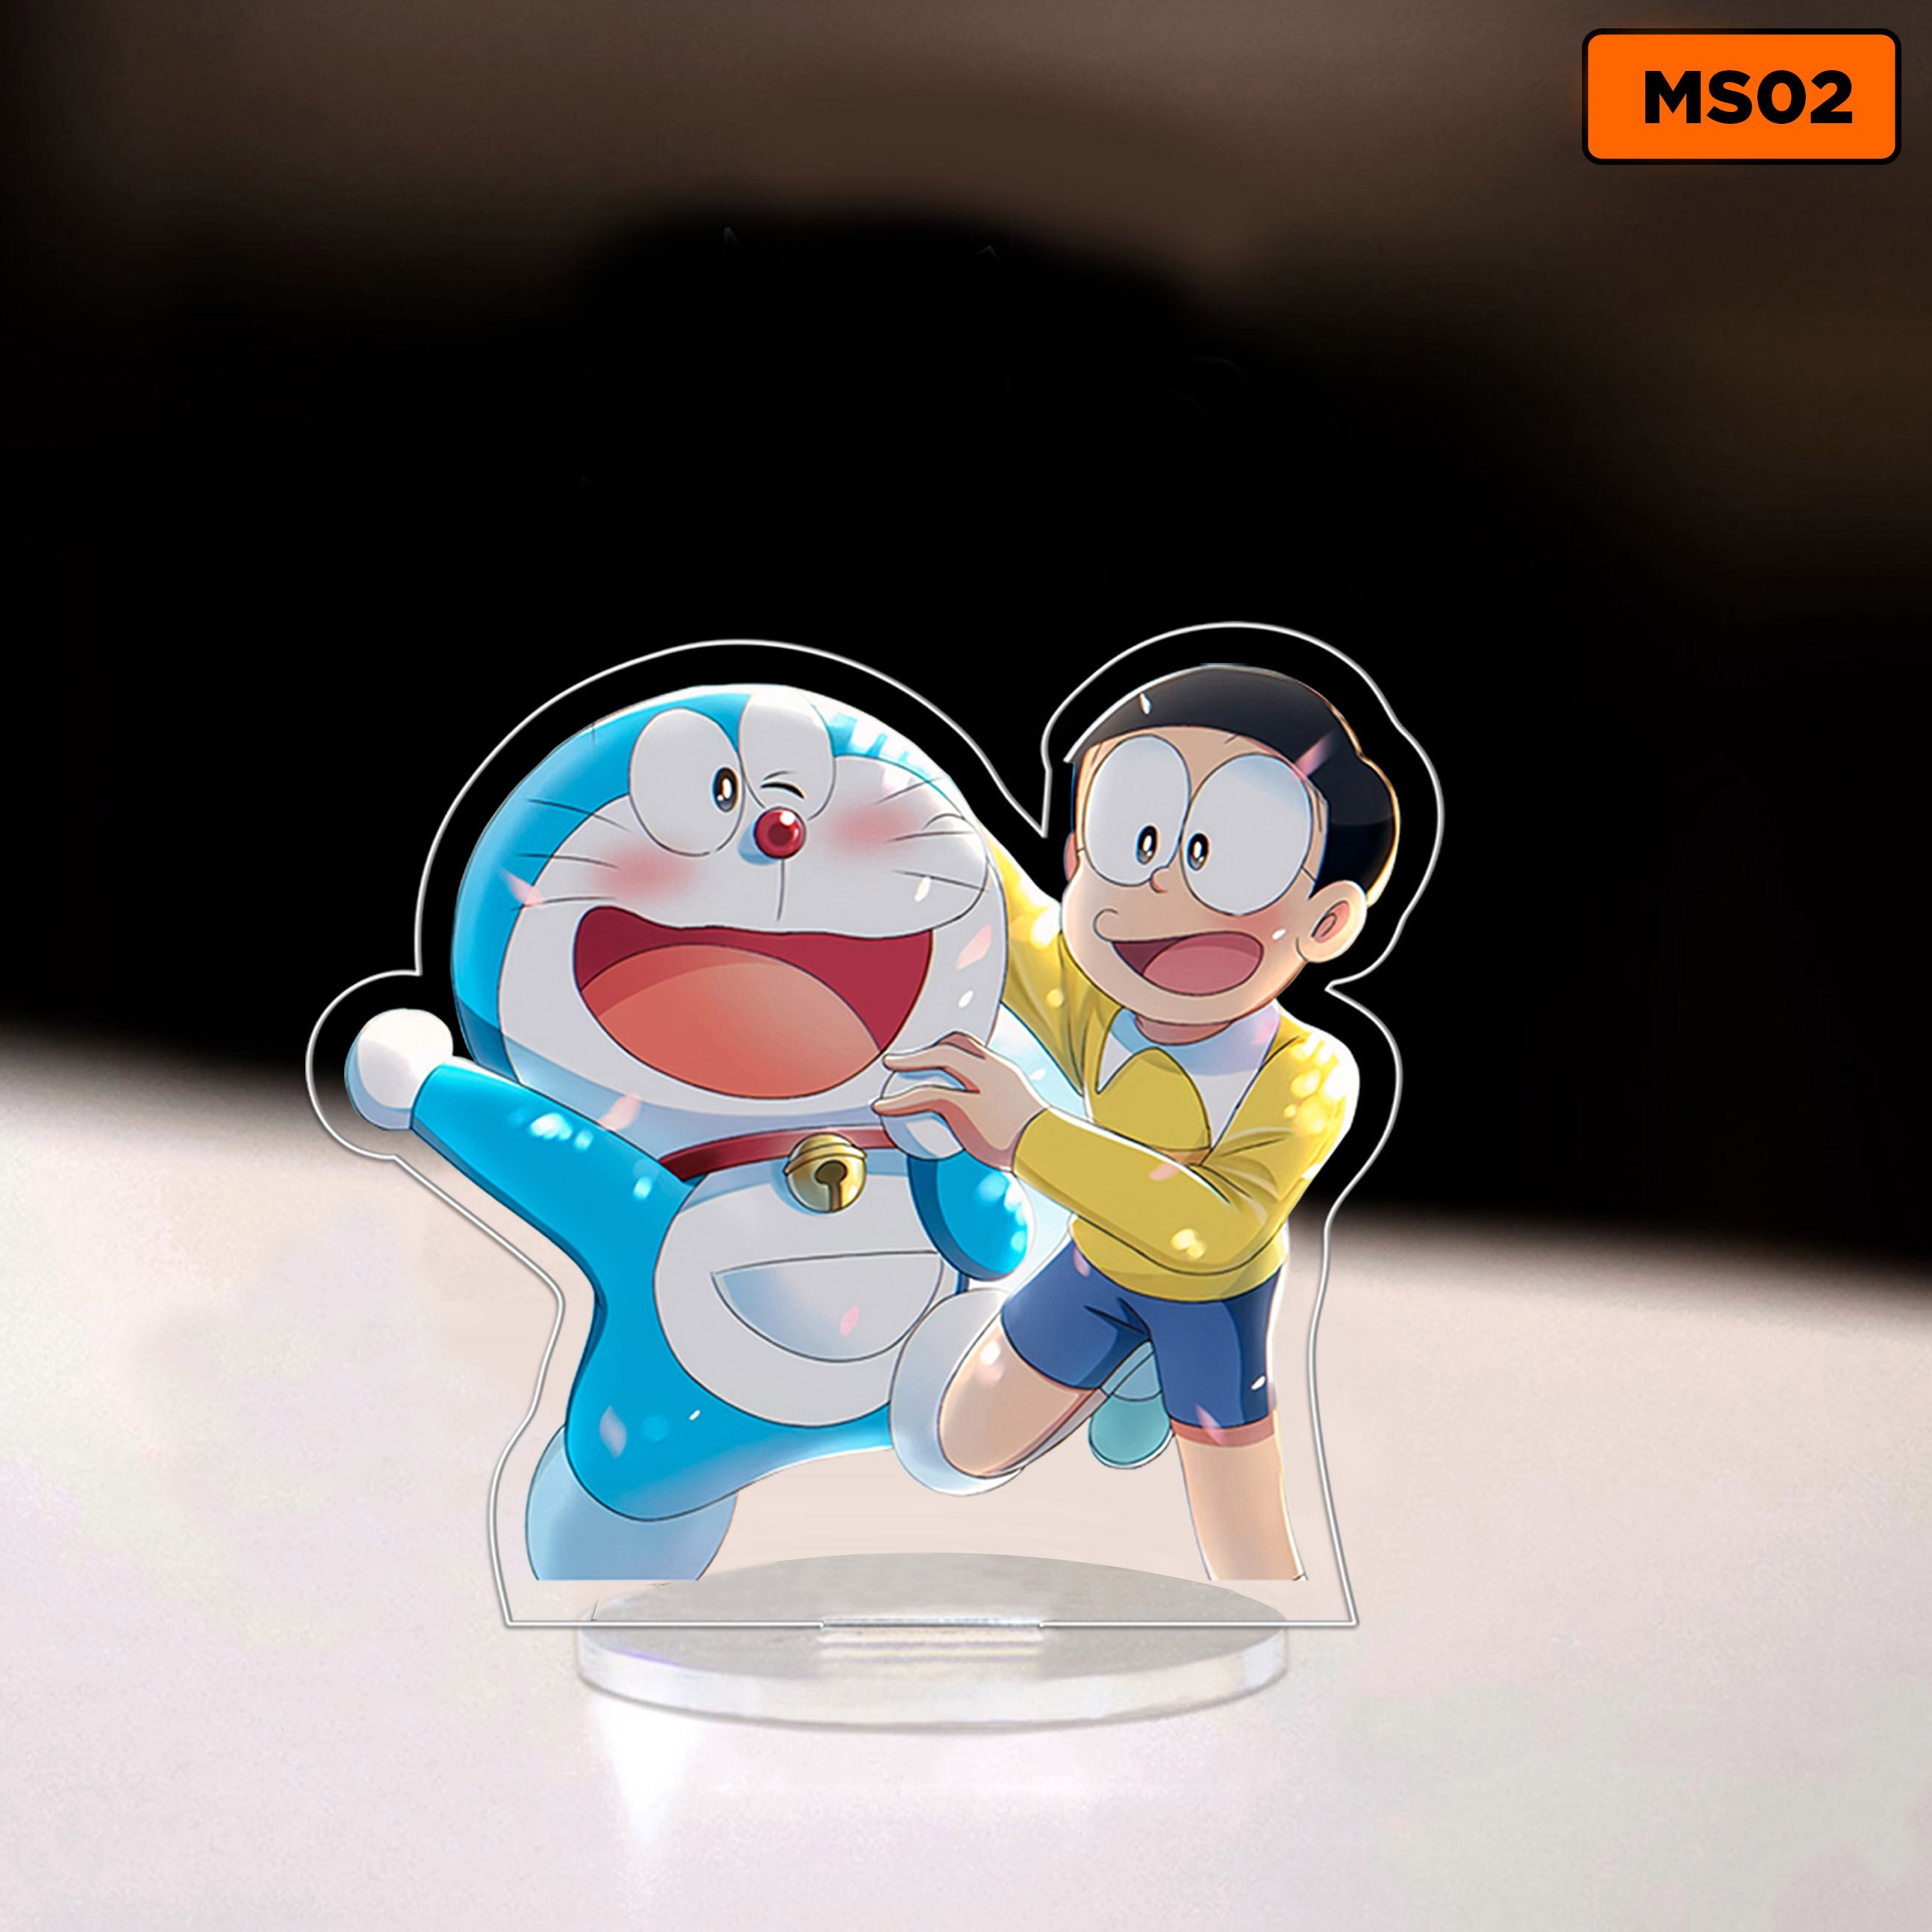 Ảnh Doraemon chibi độc đáo và dễ thương nhất